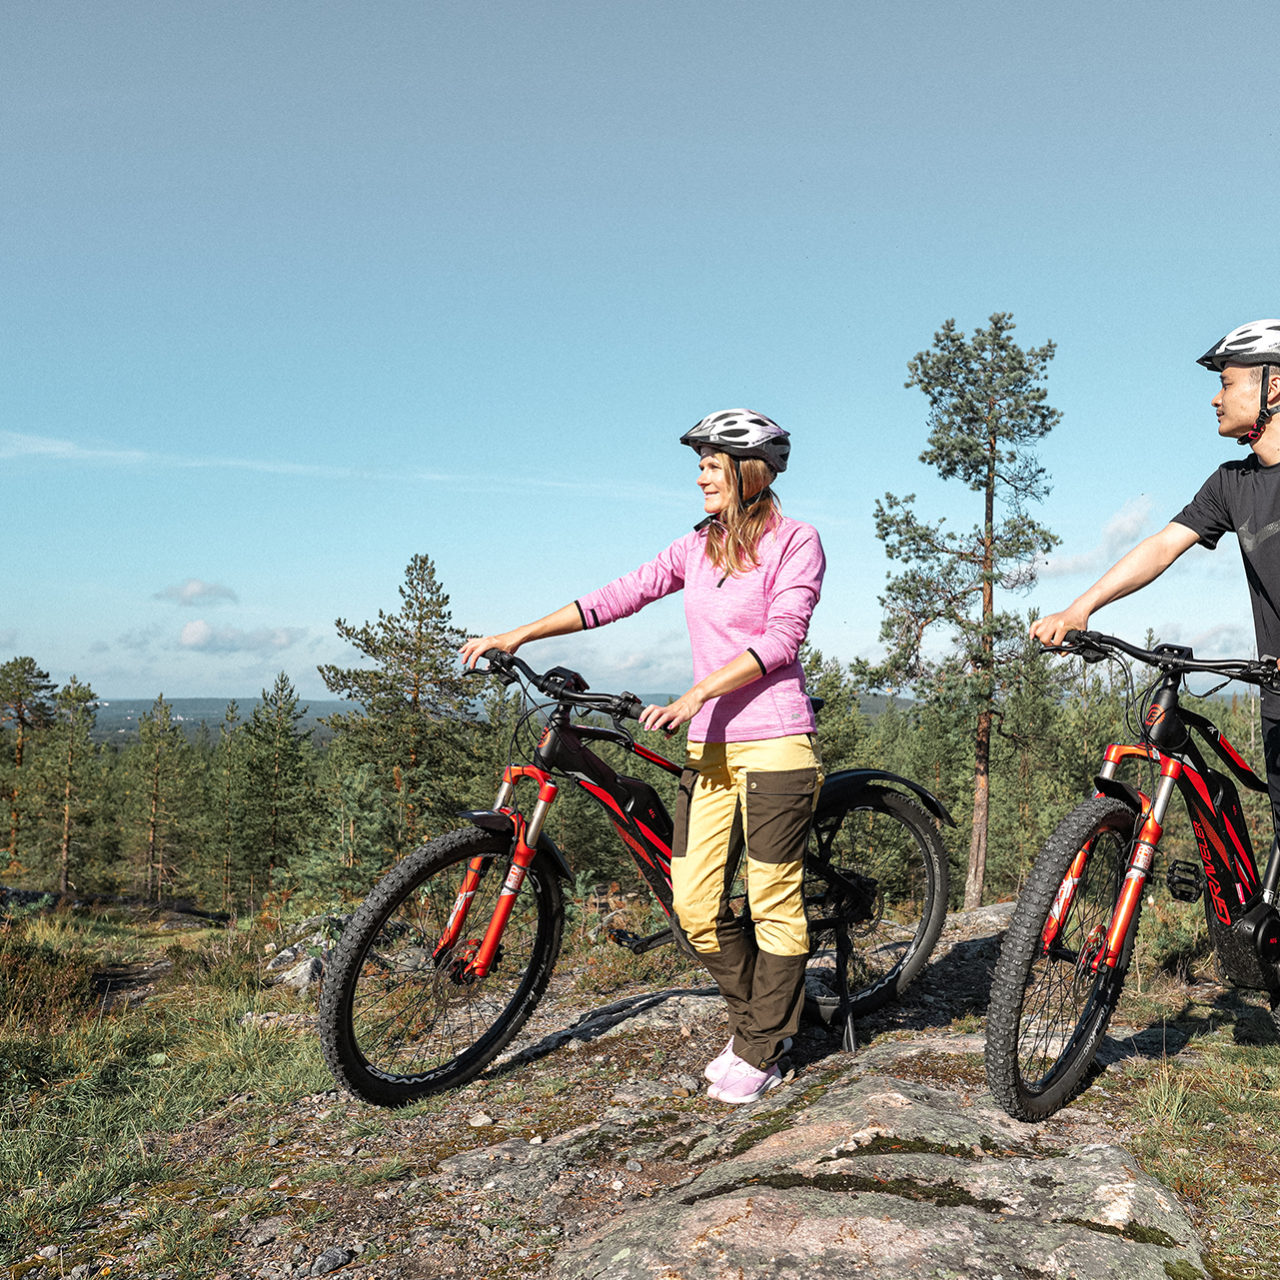 Bomba / Välinevuokraus, e-bike, sähkökäyttöinen pyörä, kesä-aktiviteetit, Villi Pohjola / Wild Nordic Finland @wildnordicfinland